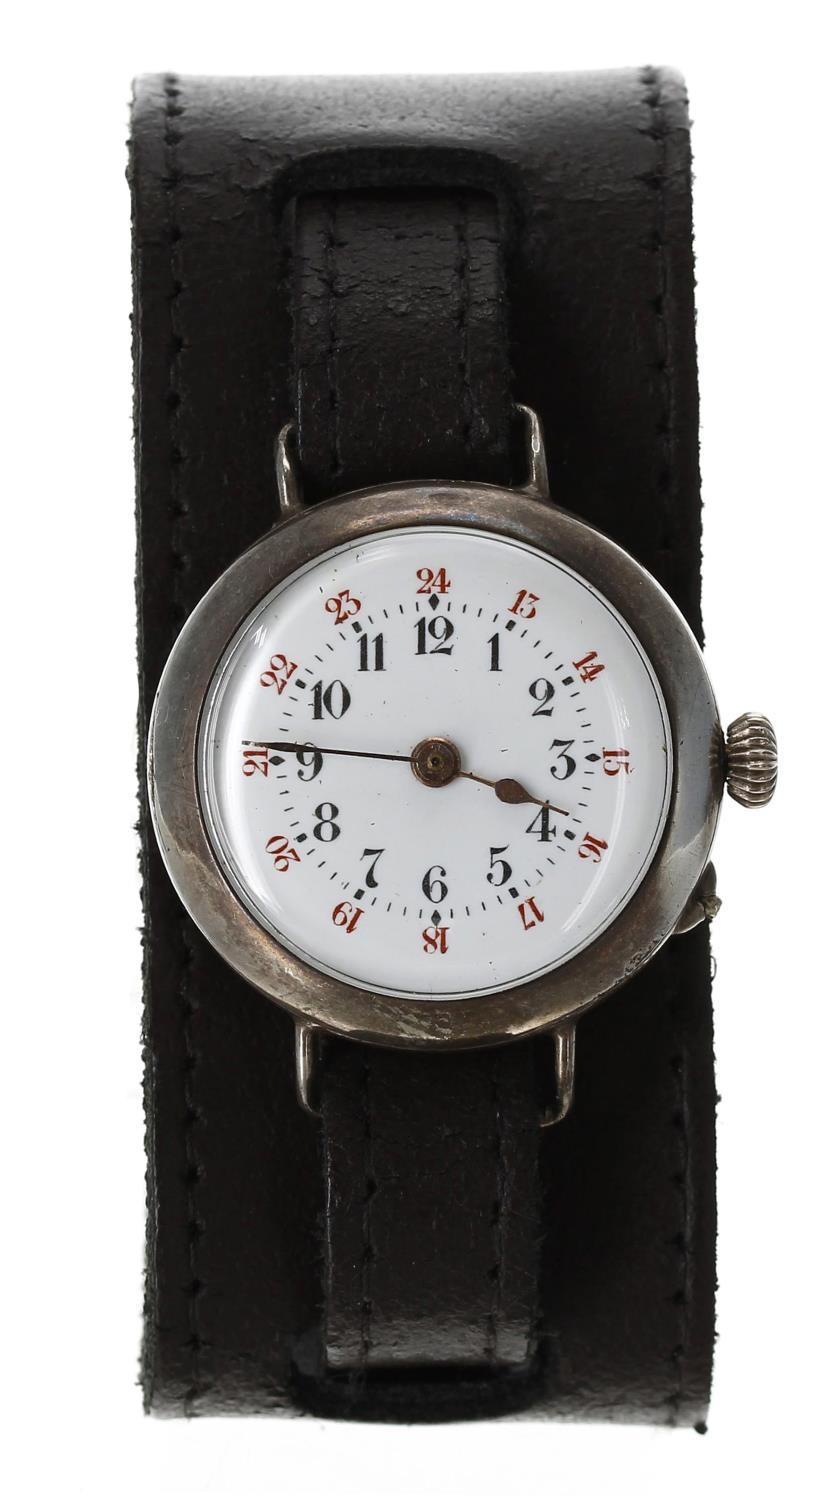 French silver wire-lug cylinder wristwatch, case no. 142801, circular enamel dial with Arabic